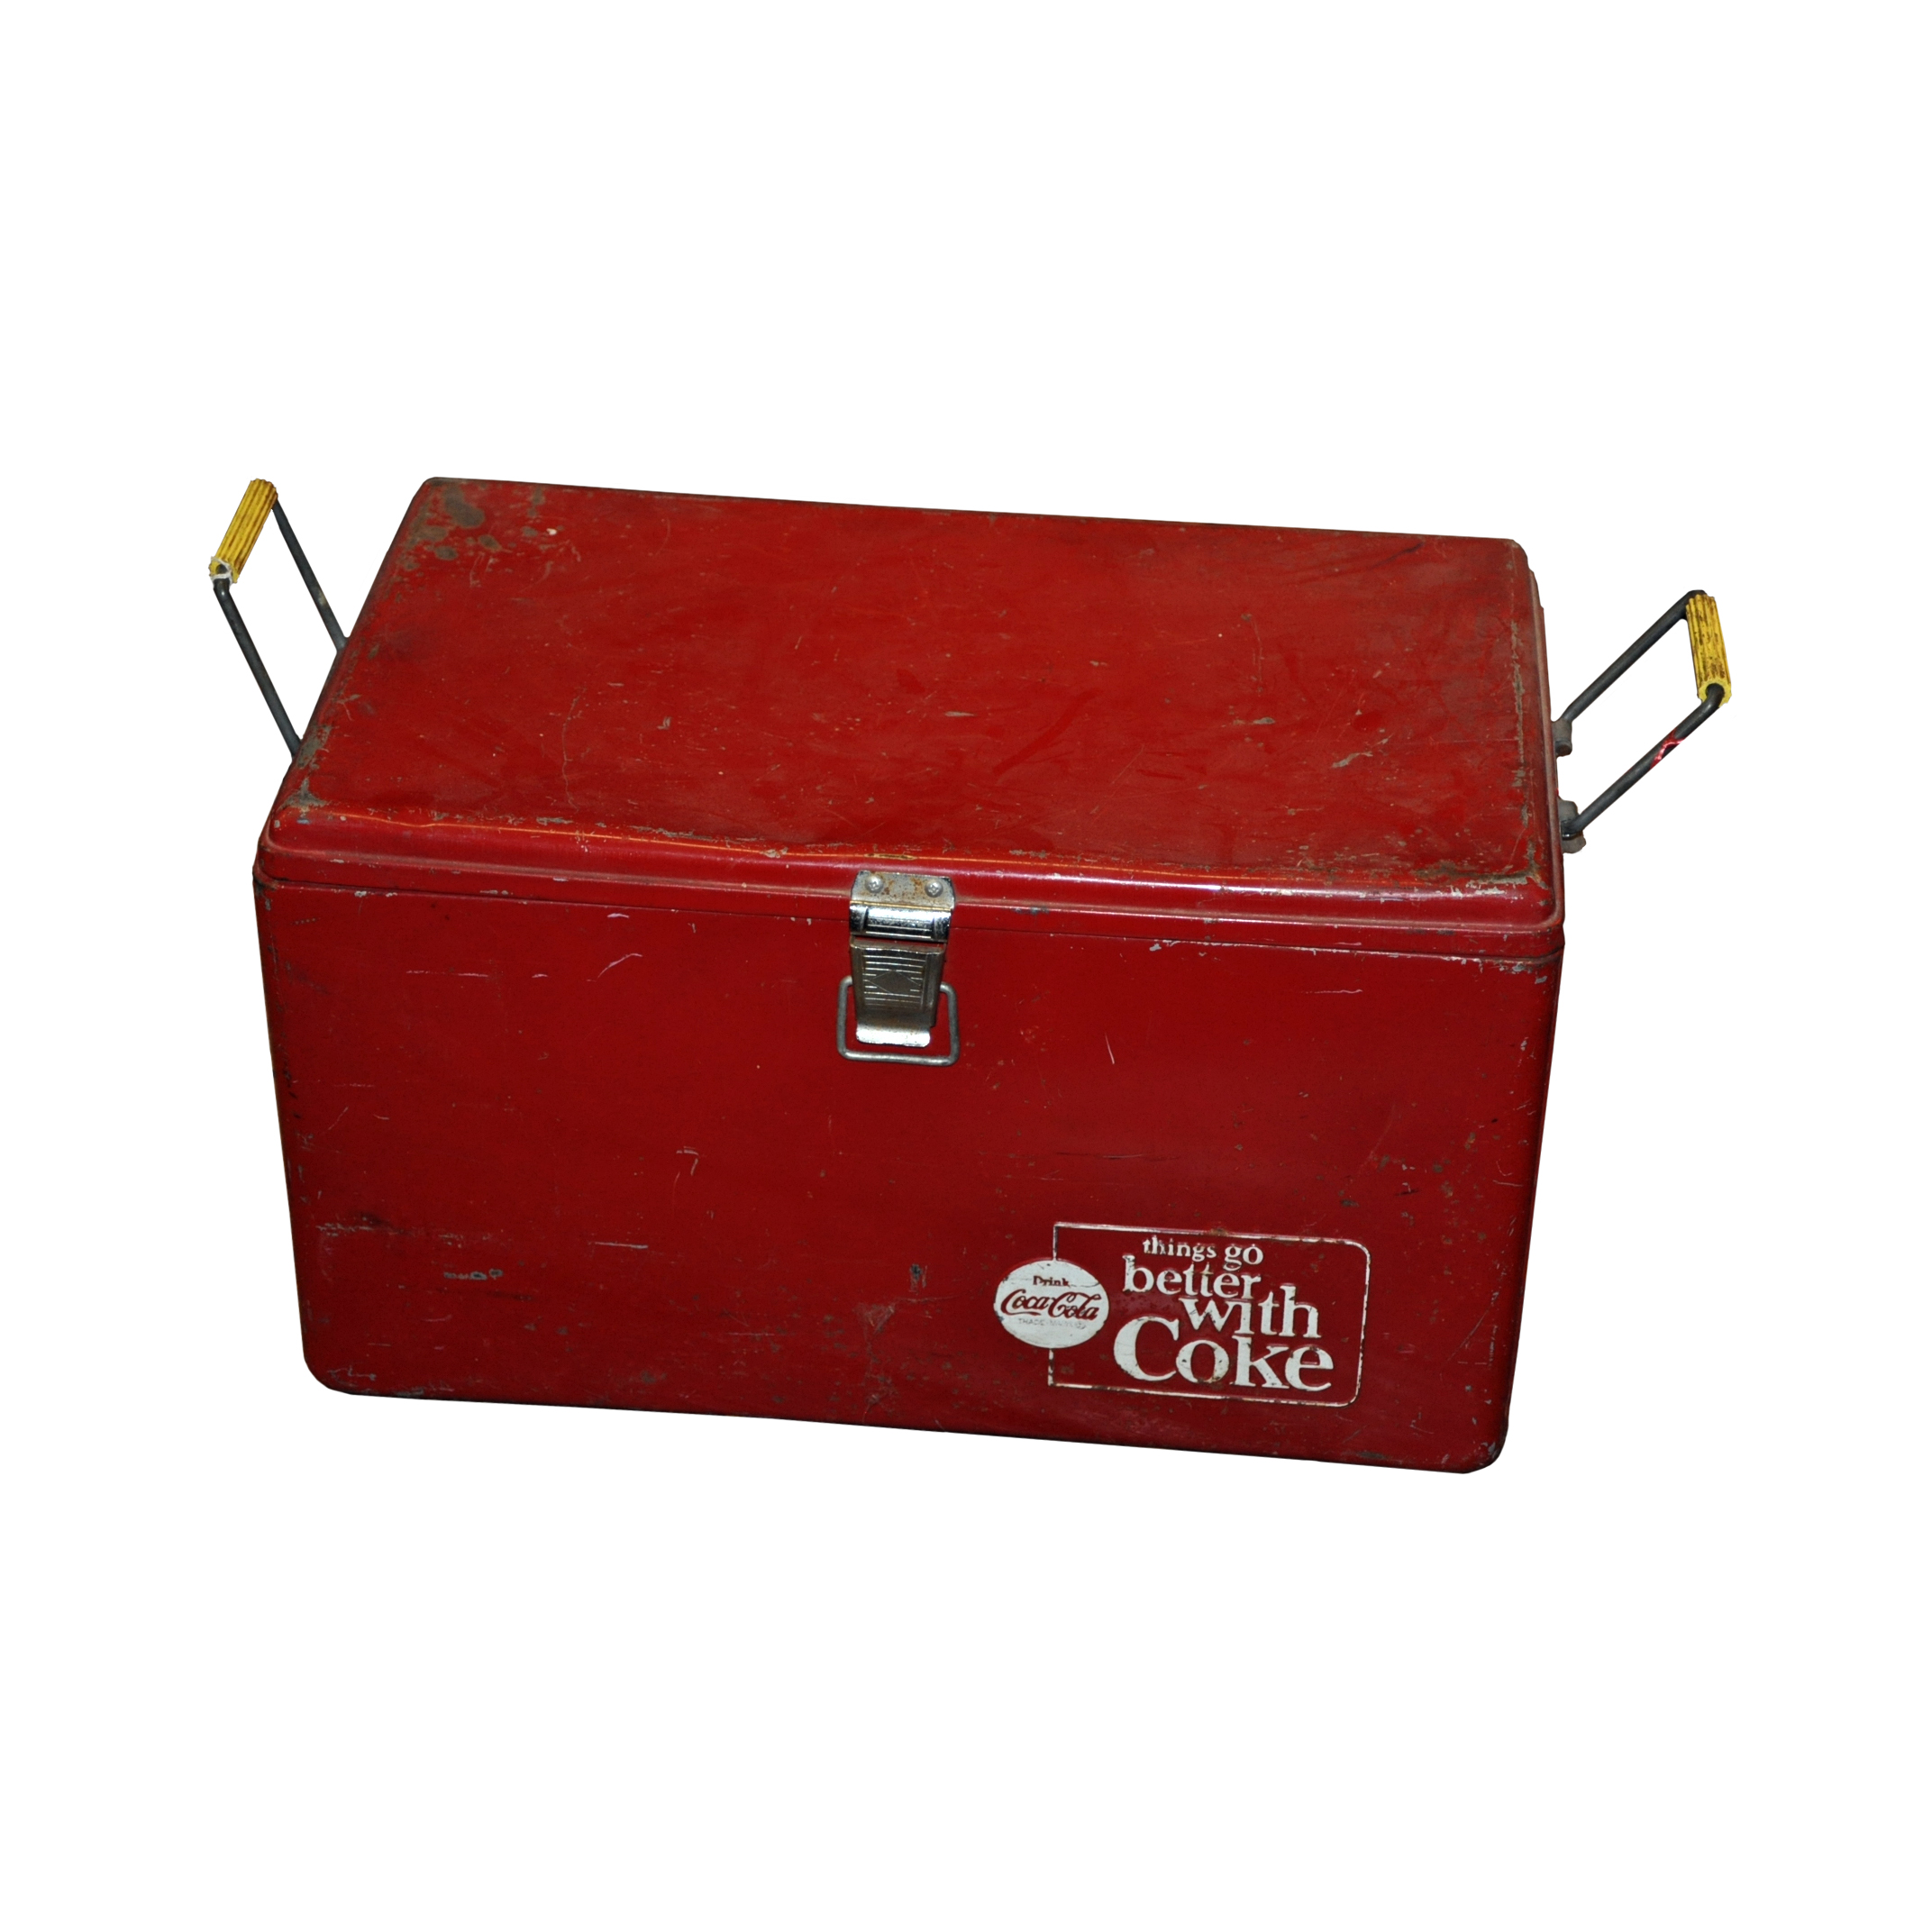 coca cola cooler box